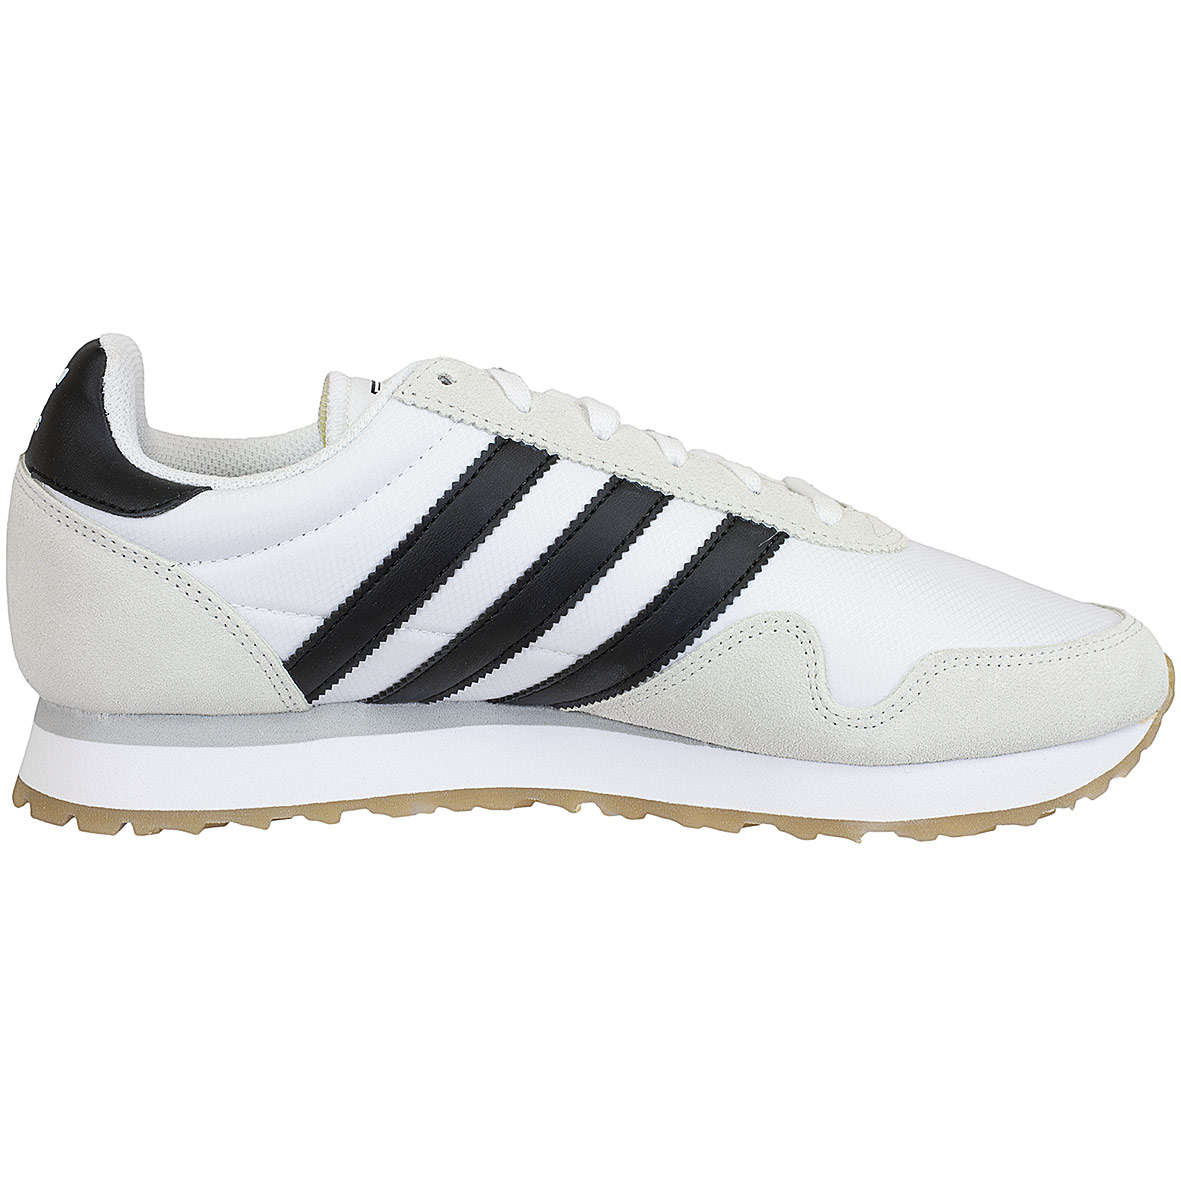 ☆ Adidas Originals Damen Sneaker Haven weiß/schwarz - hier bestellen!